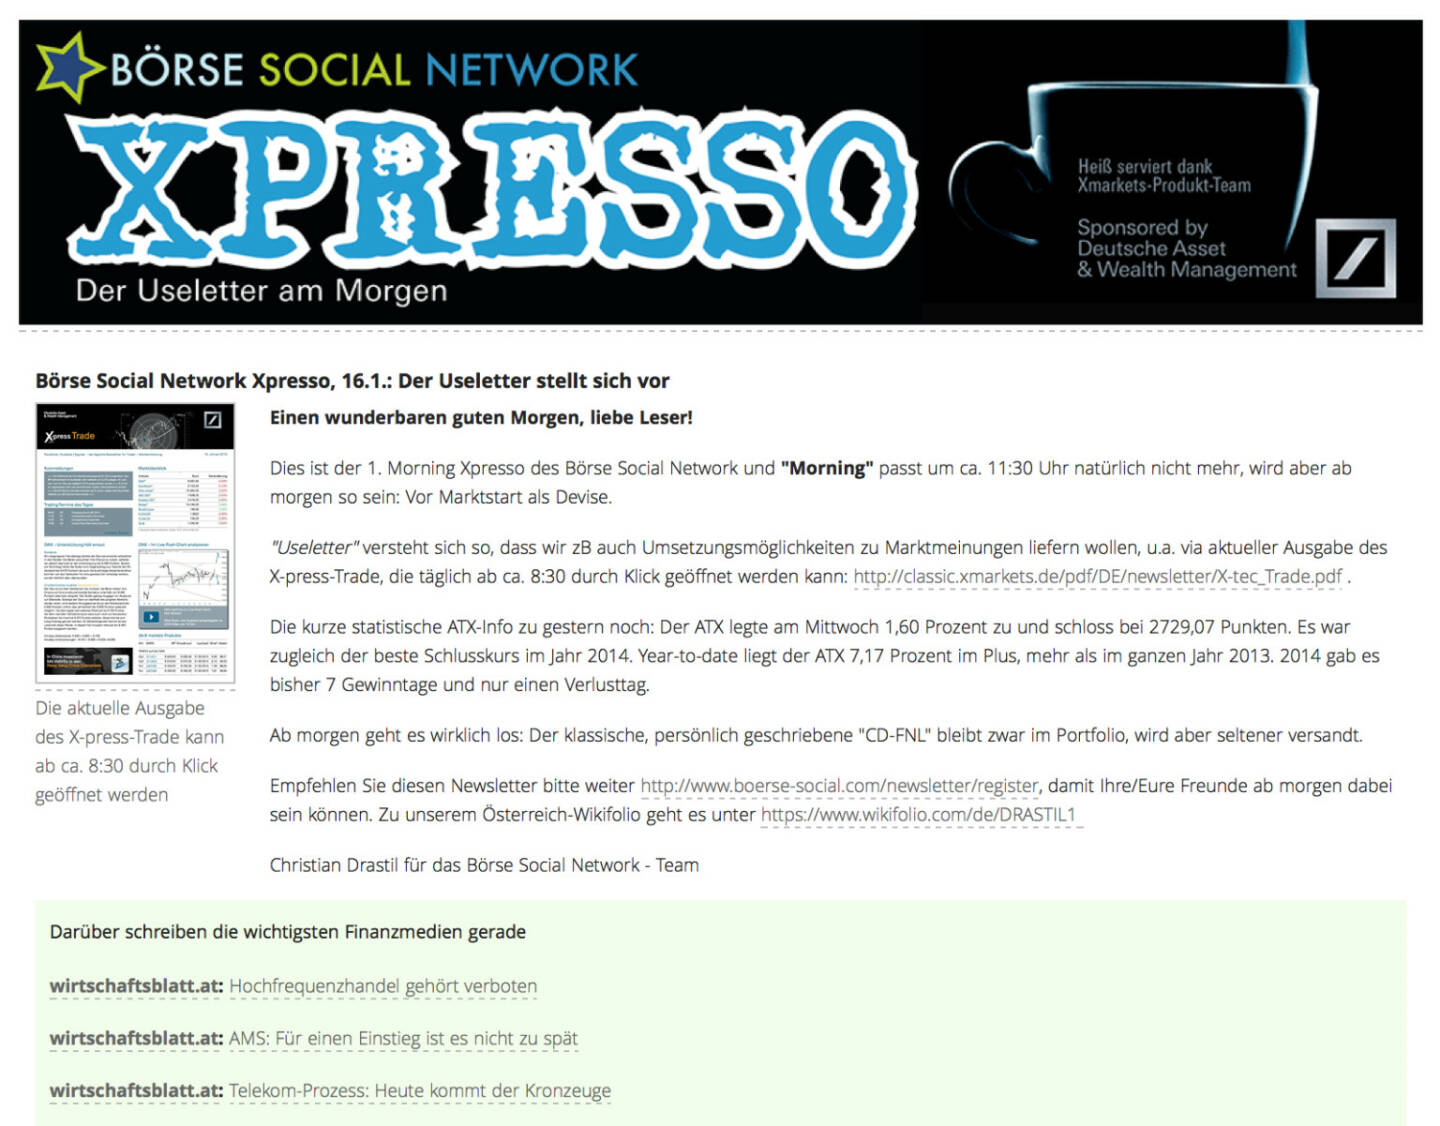 http://www.boerse-social.com am 16.1.2014: Heute wurde der 1. Morning Xpresso Useletter des Börse Social Network versandt, dieser erscheint künftig täglich vor Marktstart. Useletter versteht sich so, dass wir zB auch Umsetzungsmöglichkeiten zu Marktmeinungen liefern wollen, u.a. via aktueller Ausgabe des X-press-Trade, die täglich ab ca. 8:30 durch Klick geöffnet werden kann: http://classic.xmarkets.de/pdf/DE/newsletter/X-tec_Trade.pdf . Empfehlen Sie diesen Newsletter - so sieht die 1. Ausgabe aus http://www.christian-drastil.com/newsletter/preview/124 - bitte weiter: http://www.boerse-social.com/newsletter/register, damit Ihre/Eure Freunde ab morgen dabei sein können. Die Launch-Chronologie gibt es HIER. Stay tuned.